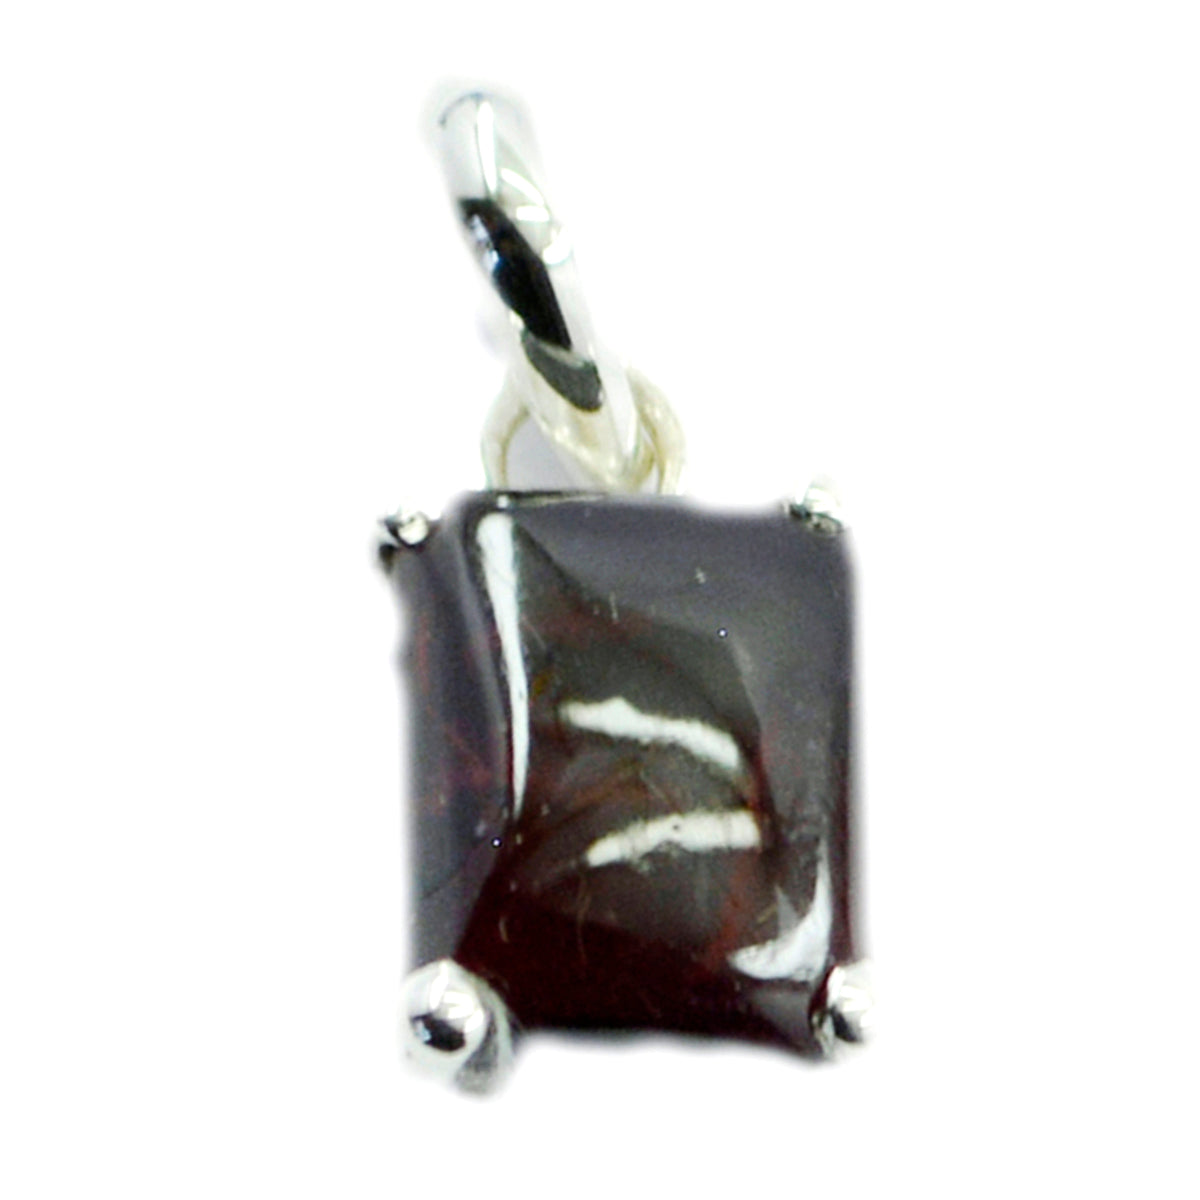 Riyo hot gems octágono cabujón rojo granate colgante de plata regalo para compromiso